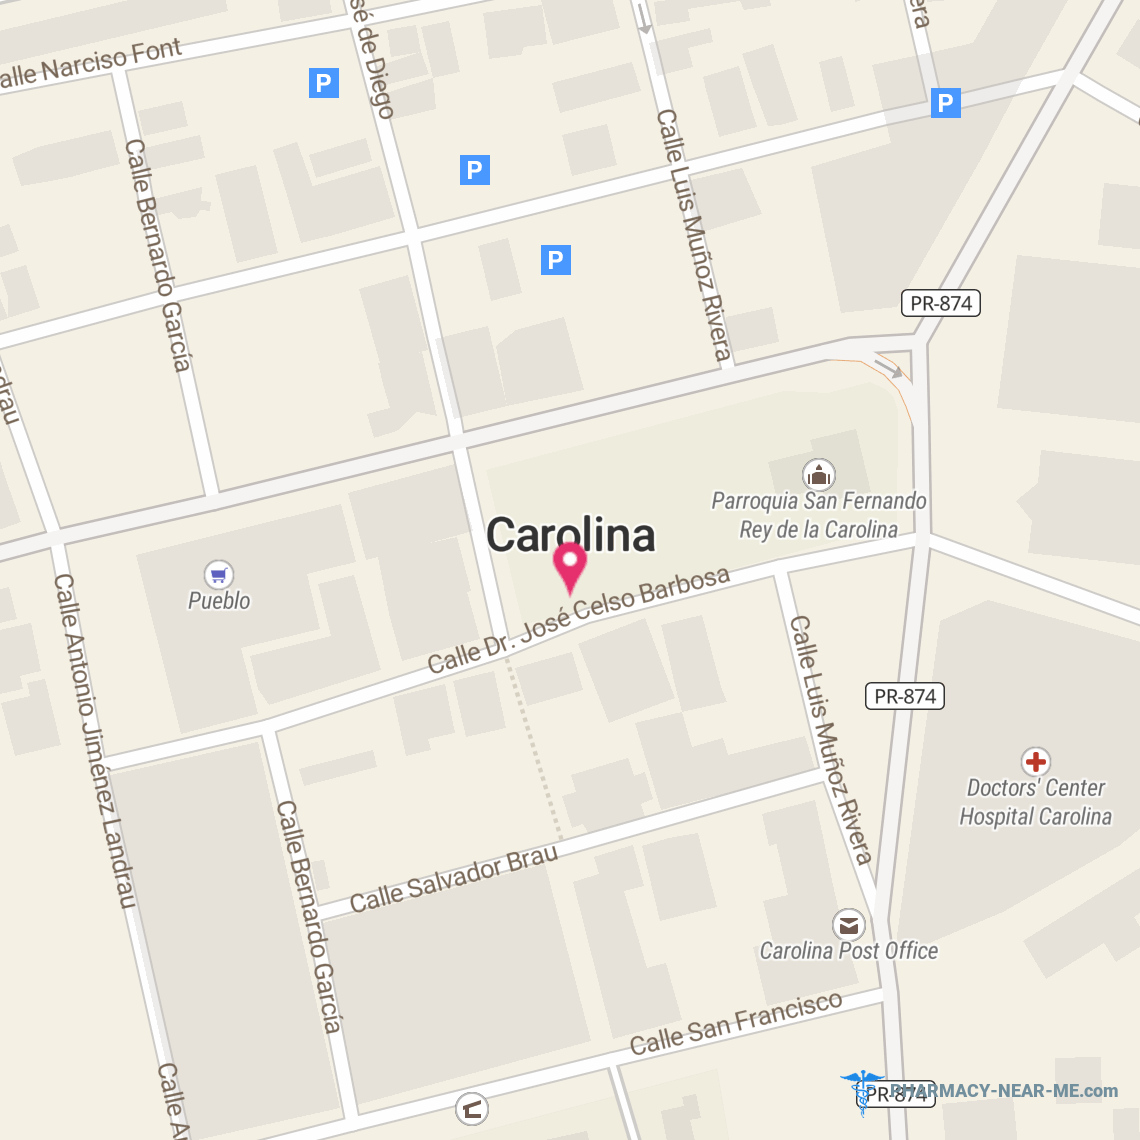 FARMACIA PUERTA DE CAROLINA EXPRESO - Pharmacy Hours, Phone, Reviews & Information: Carolina, PR